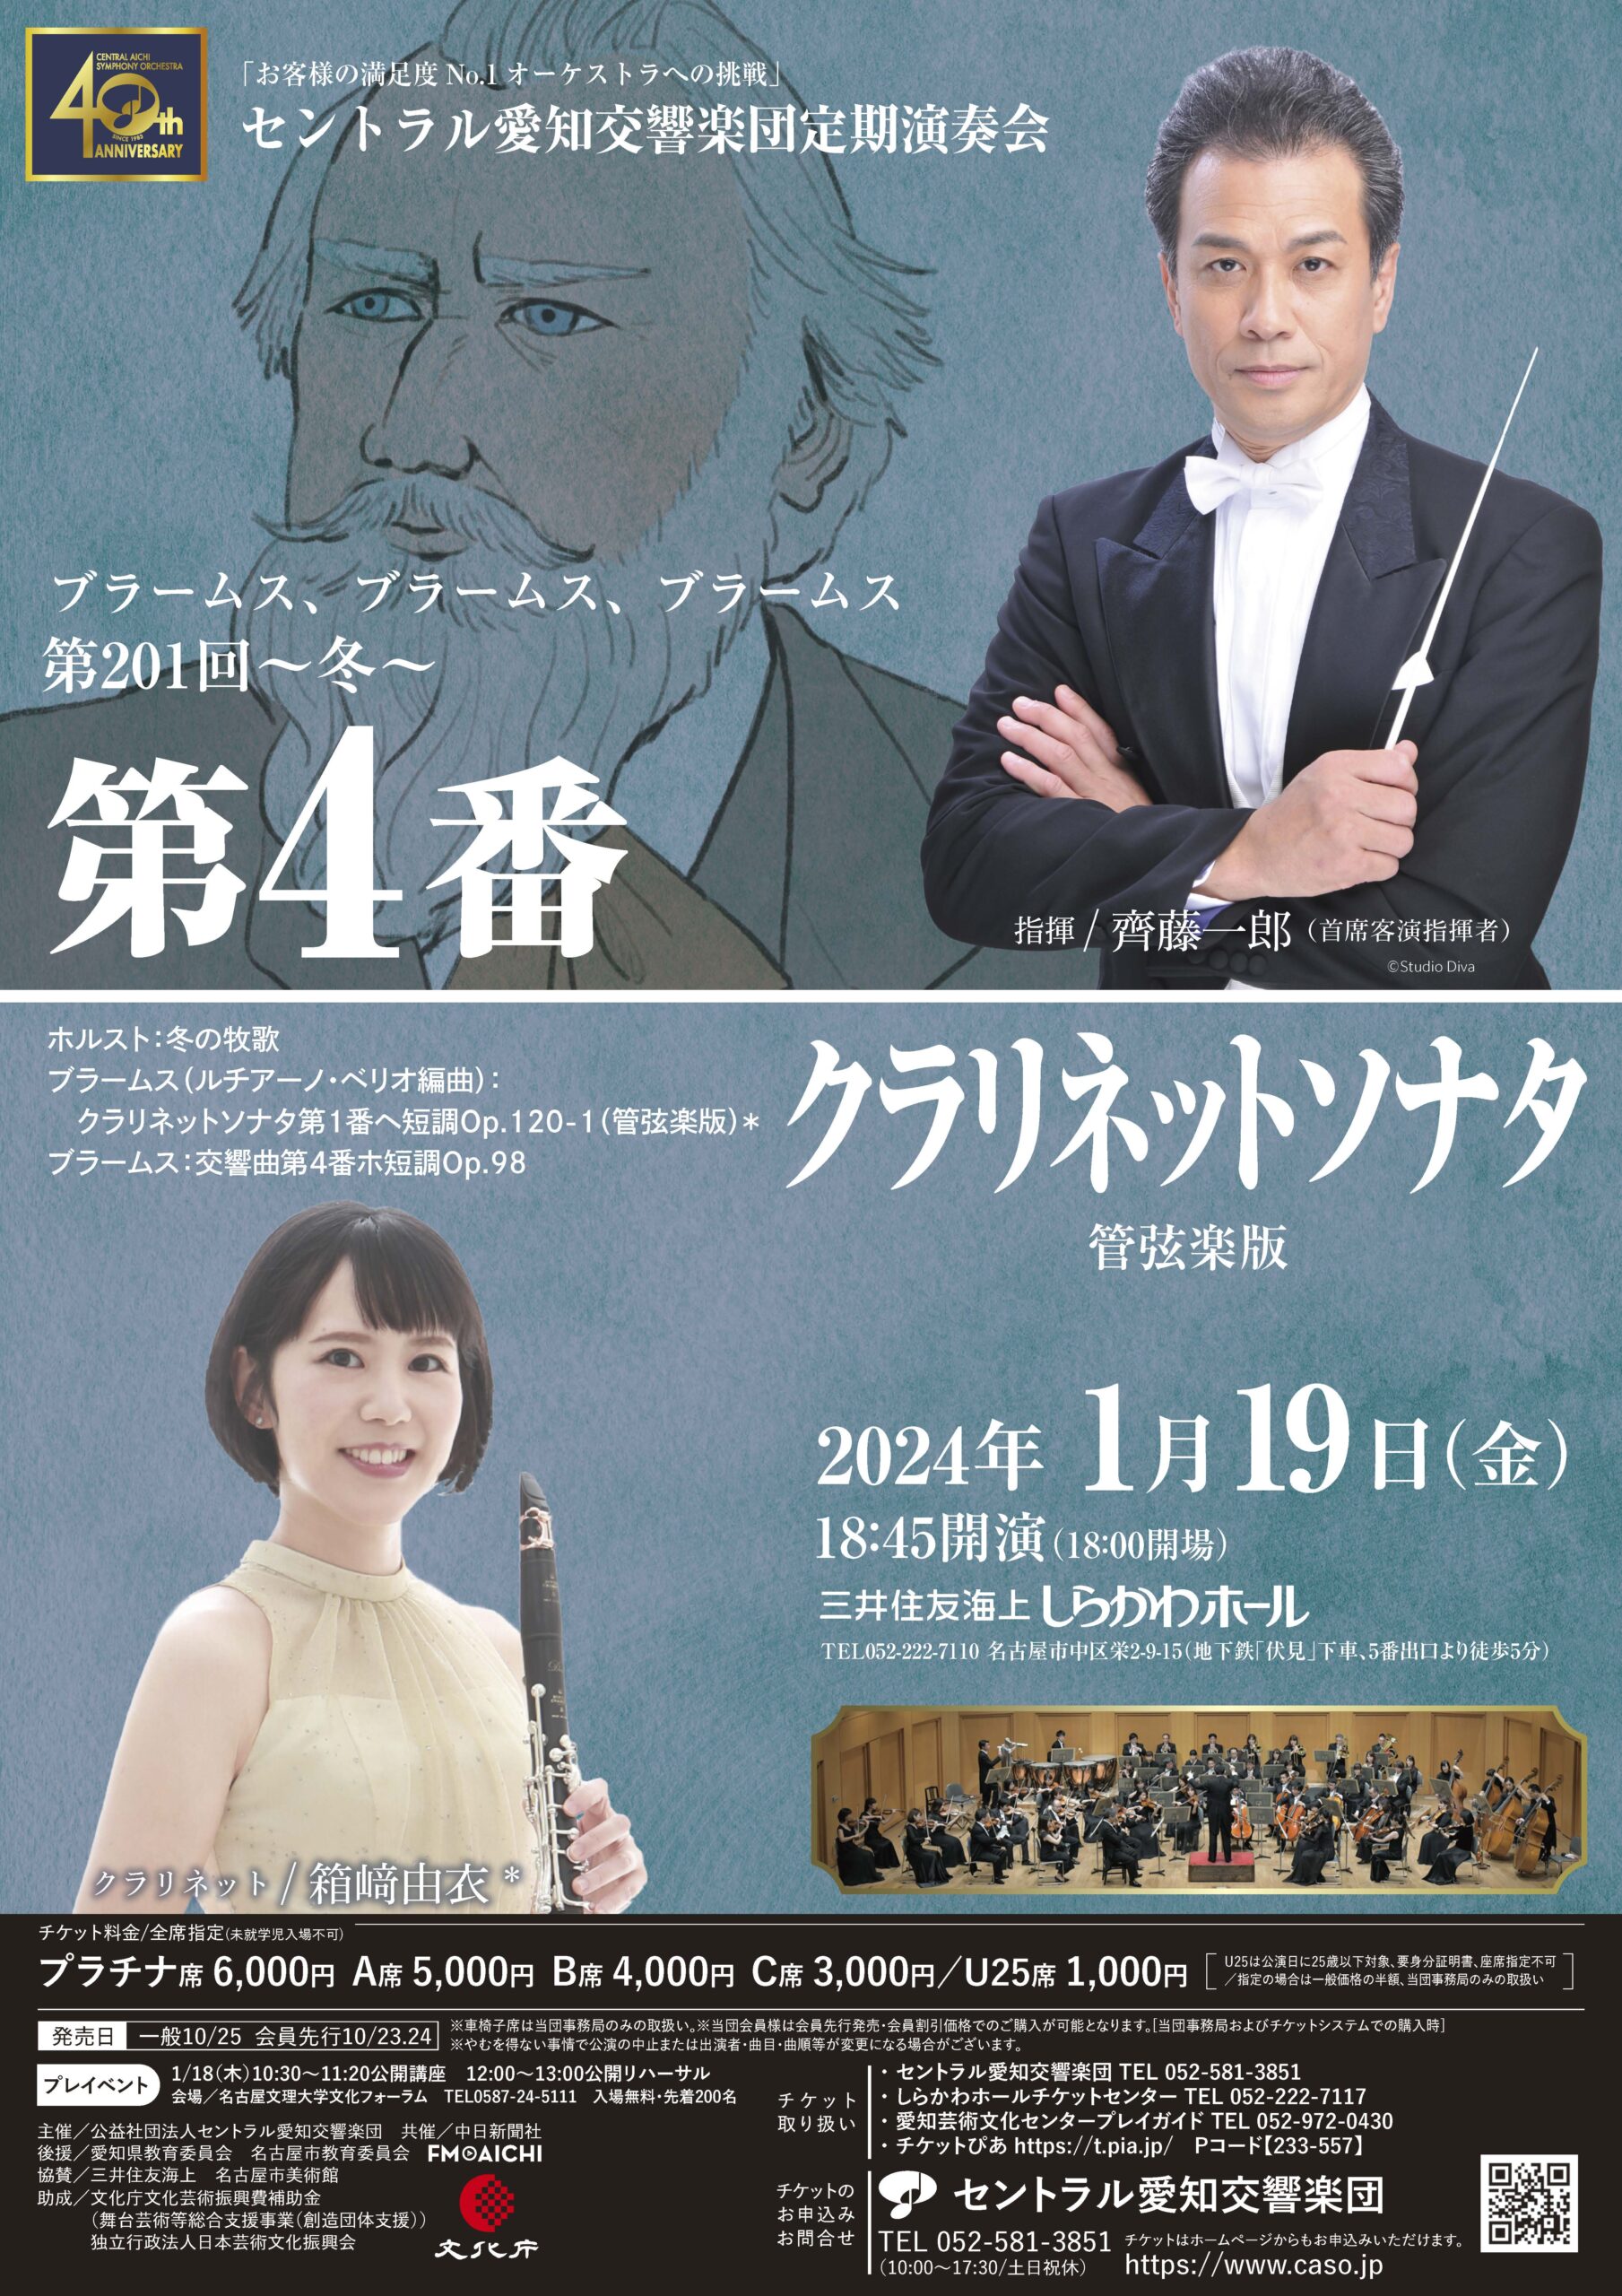 セントラル愛知交響楽団第201回定期演奏会のフライヤー画像